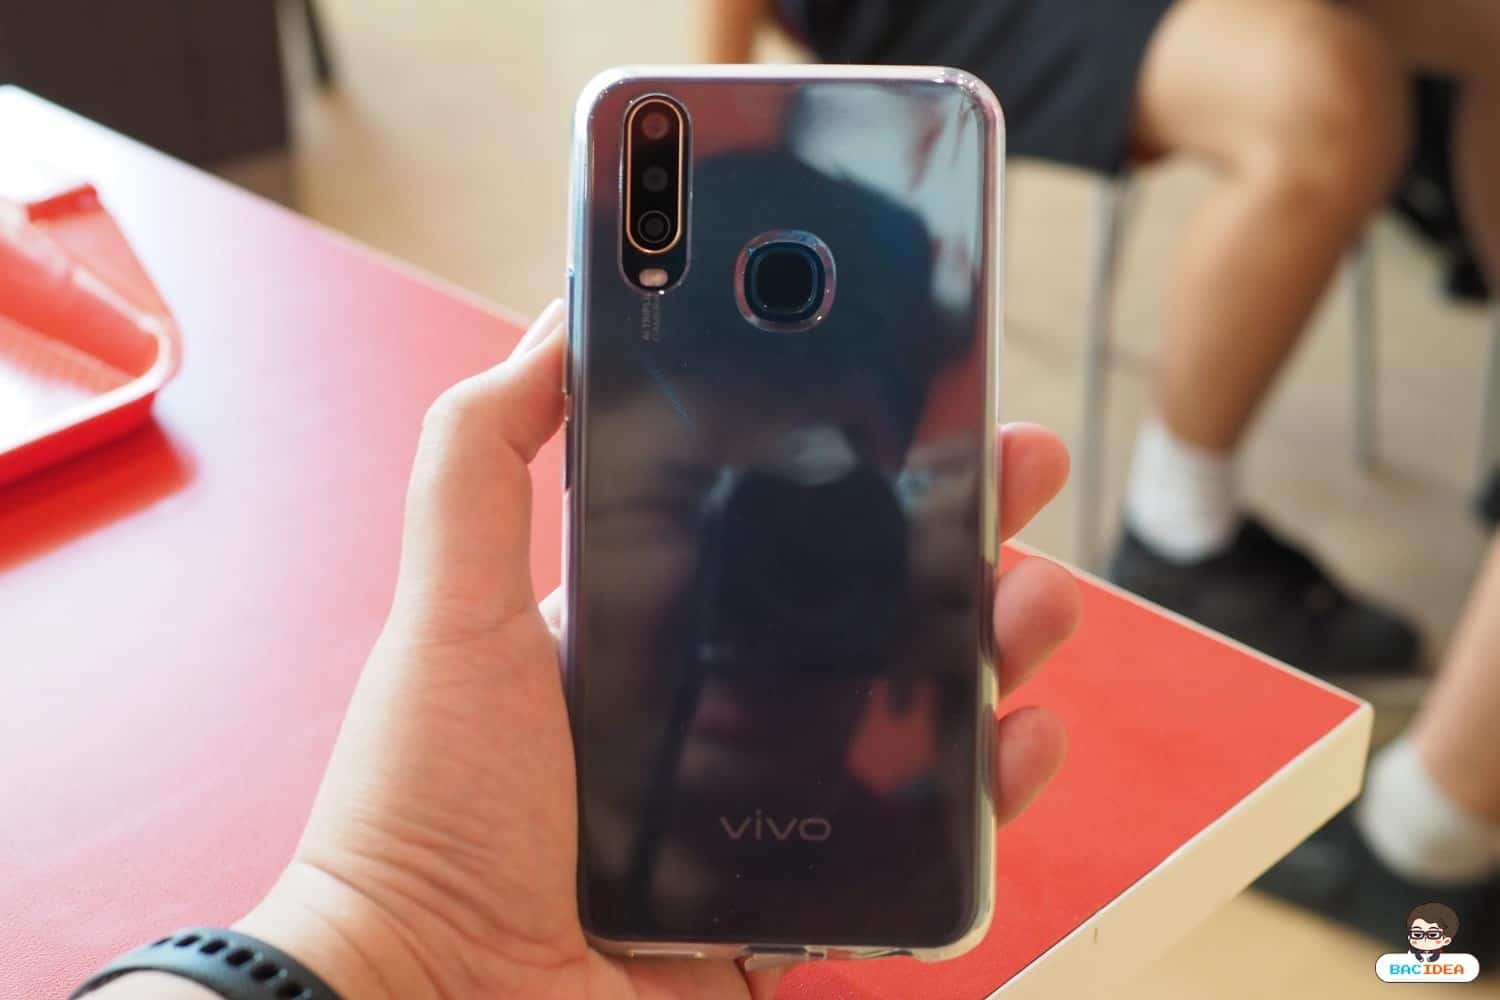 รีวิว Vivo Y15 2020 | กล้อง 3 ตัวเปิดมุมมองใหม่ แบต 5000 ใหญ่สะใจ สเปคดีไม่แพ้ใคร ในราคา 4,999 บาท 3